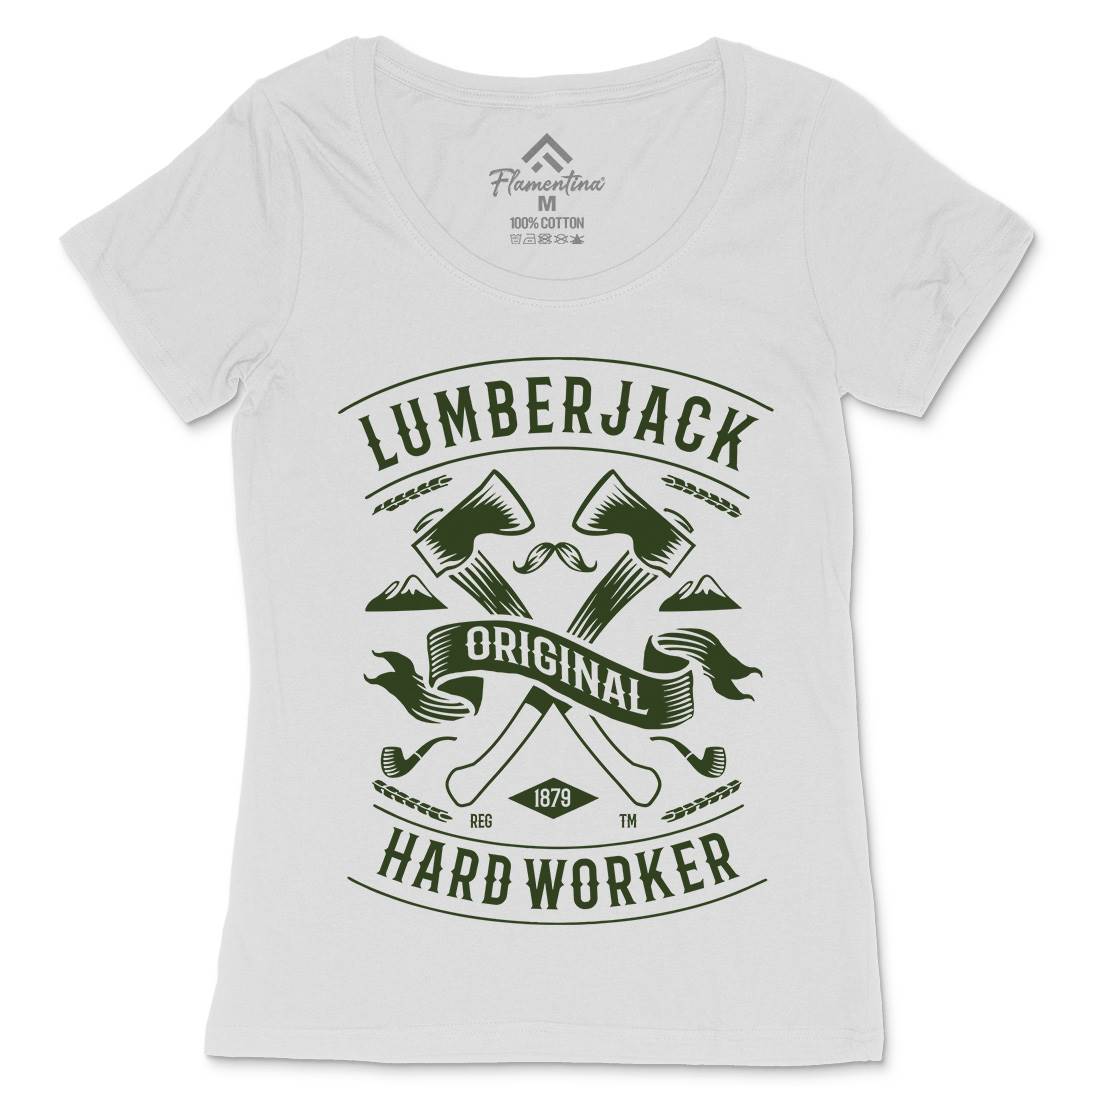 Lumberjack Womens Scoop Neck T-Shirt Retro B229